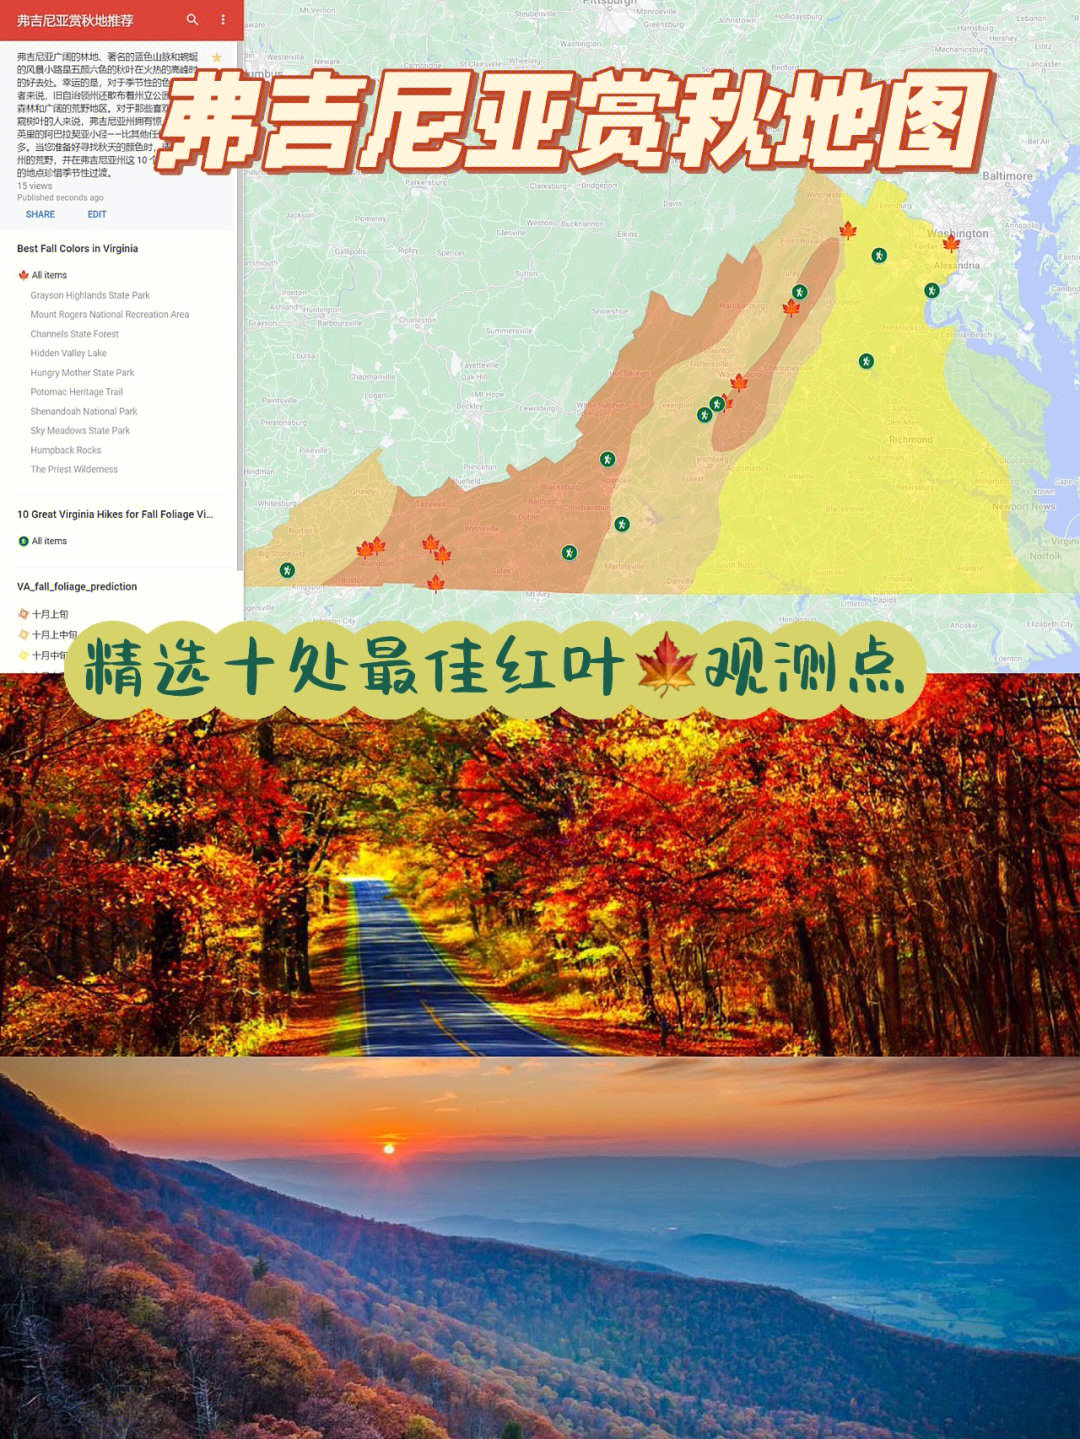 中国清朝枫叶地图图片